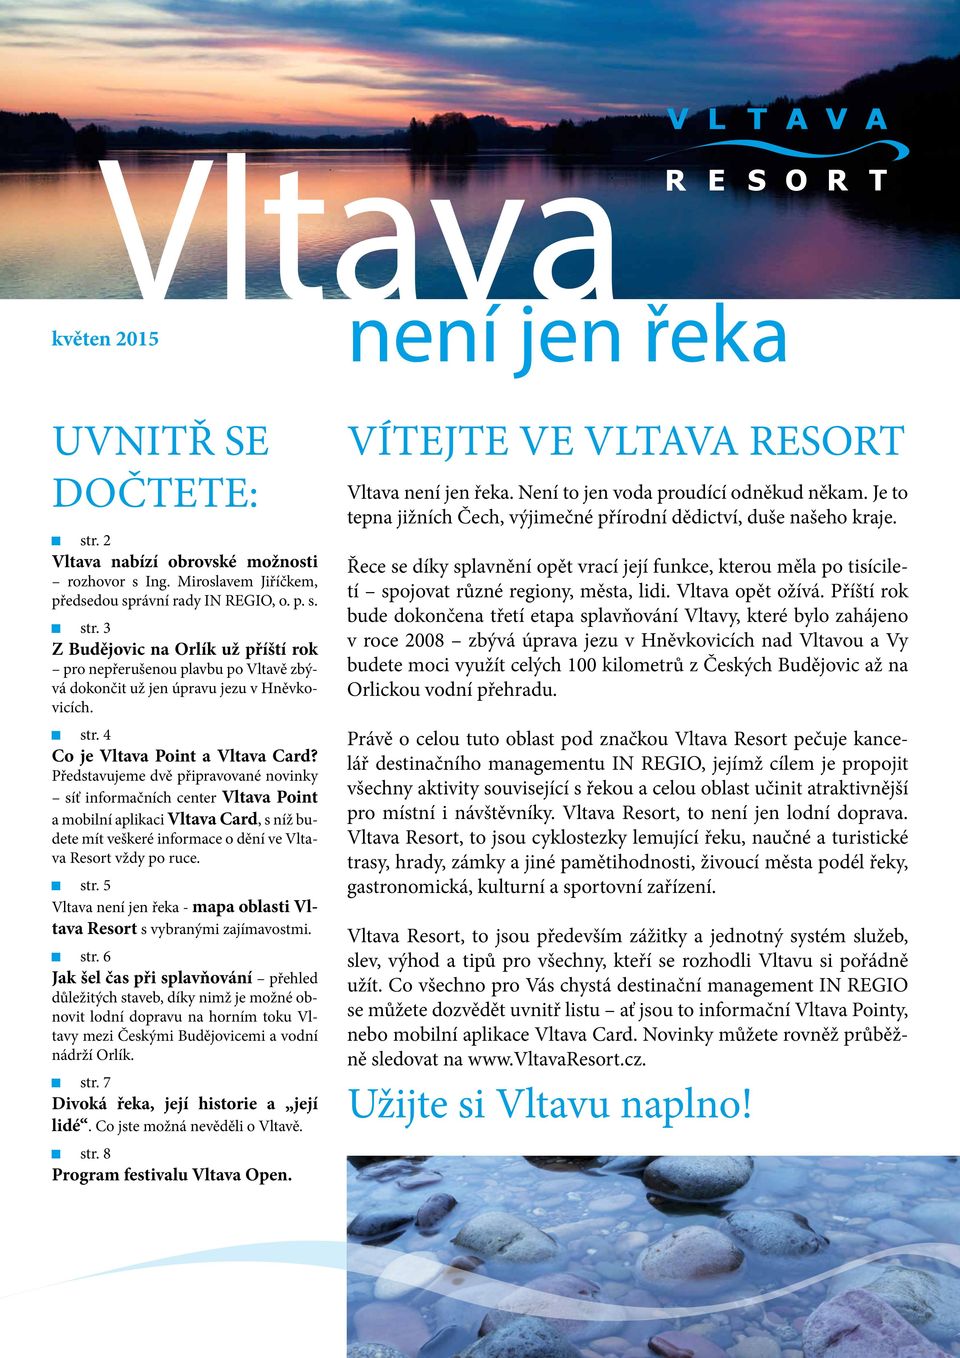 Představujeme dvě připravované novinky síť informačních center Vltava Point a mobilní aplikaci Vltava Card, s níž budete mít veškeré informace o dění ve Vltava Resort vždy po ruce. str.